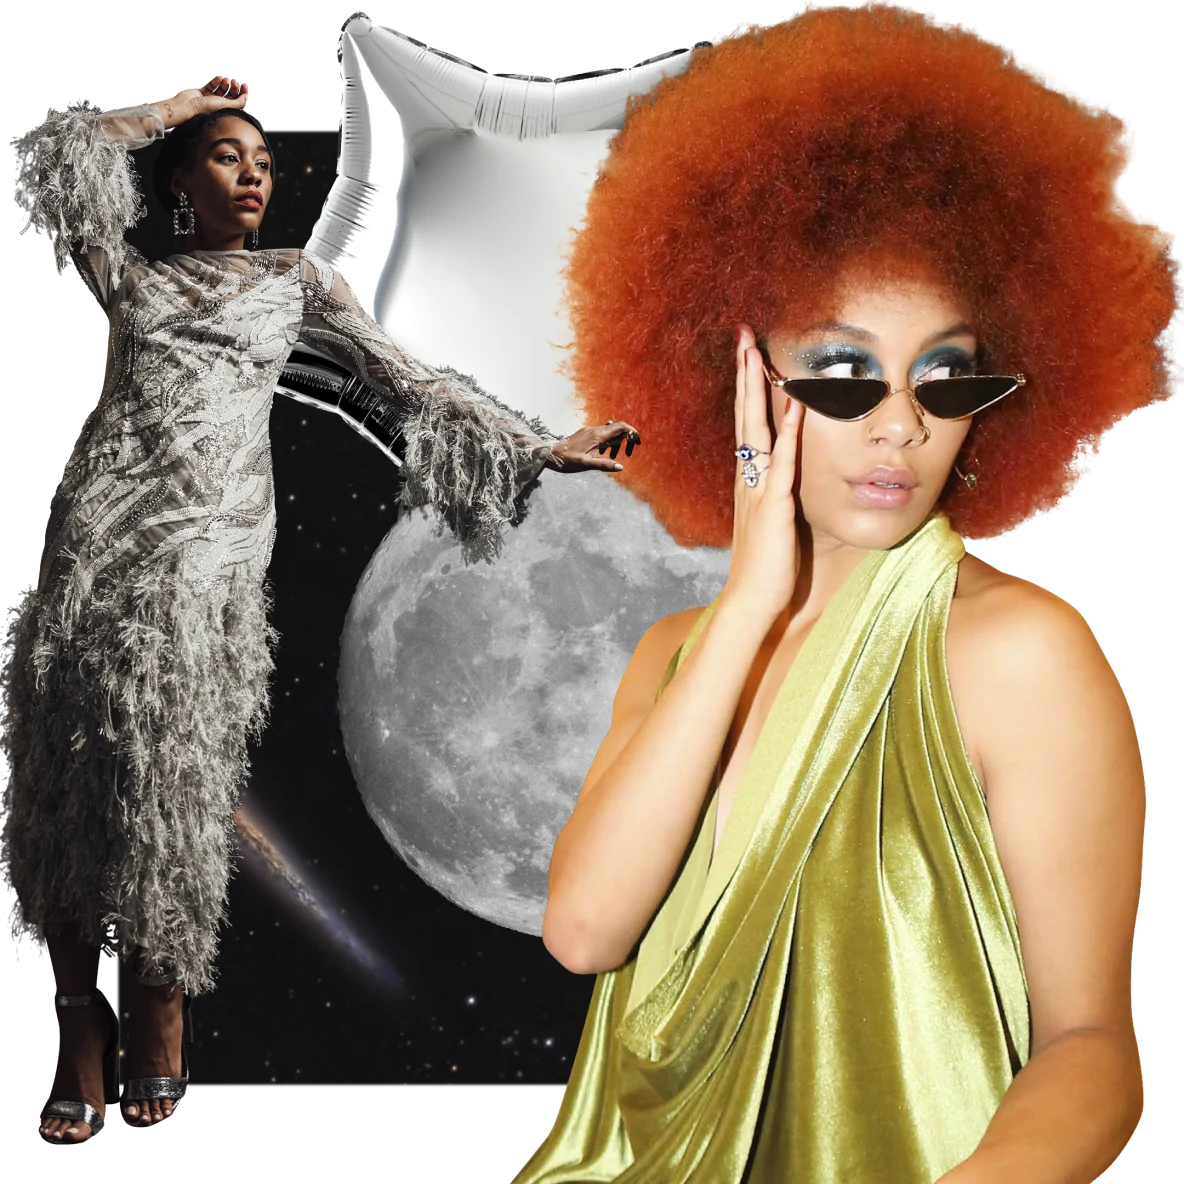 Mujer de piel oscura con un vestido gris con partes peludas apoyada sobre una luna llena a la izquierda. Mujer de piel oscura y cabello rojo con un vestido verde de seda a la derecha. Fondo del espacio exterior con un globo plateado en la parte superior.